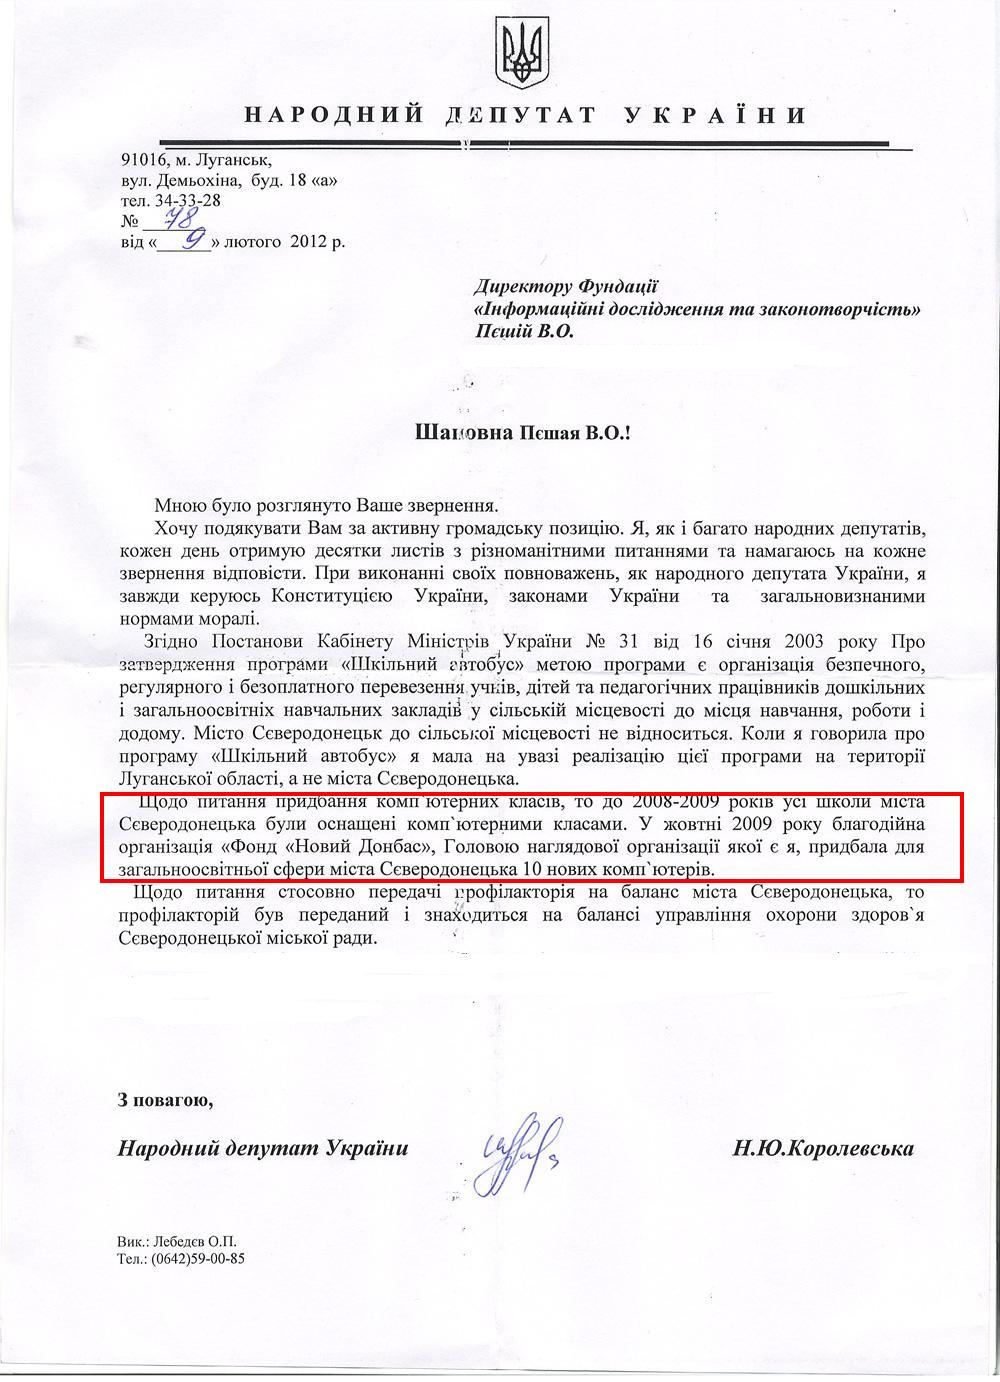 Письмо народного депутата Украины Н.Ю.Королевской